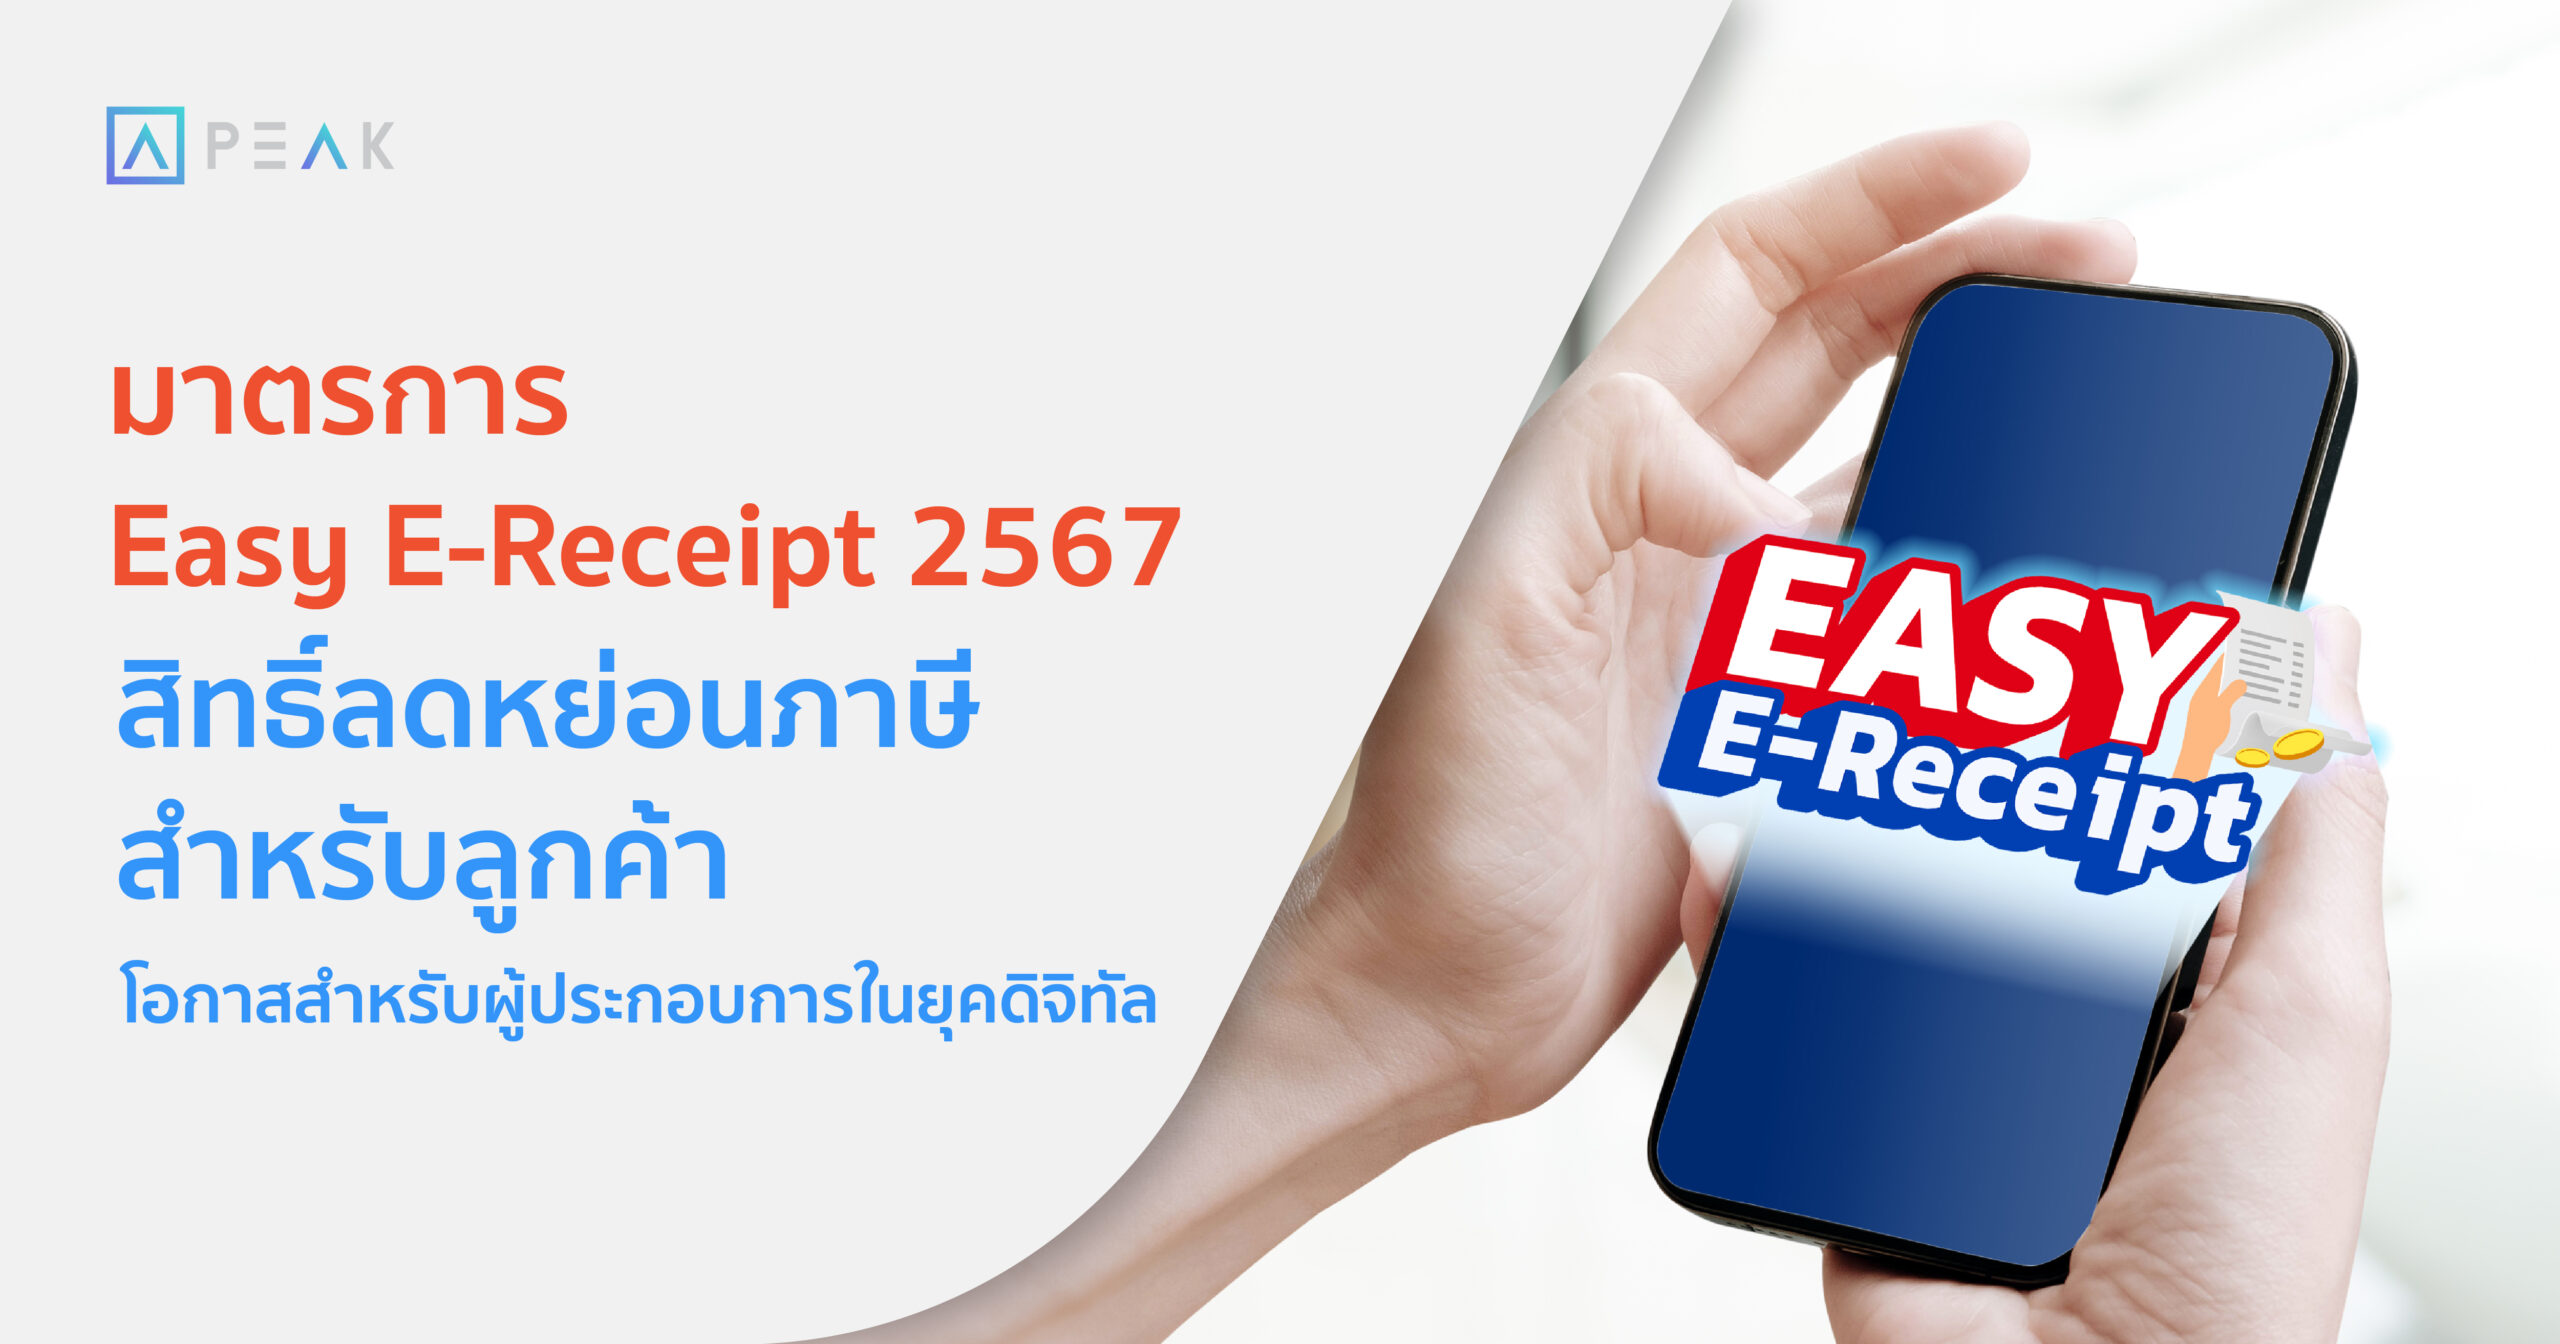 มาตรการ Easy e-Receipt 2567 สิทธิลดหย่อนภาษีสำหรับลูกค้า โอกาสสำหรับผู้ประกอบการในยุคดิจิทัล